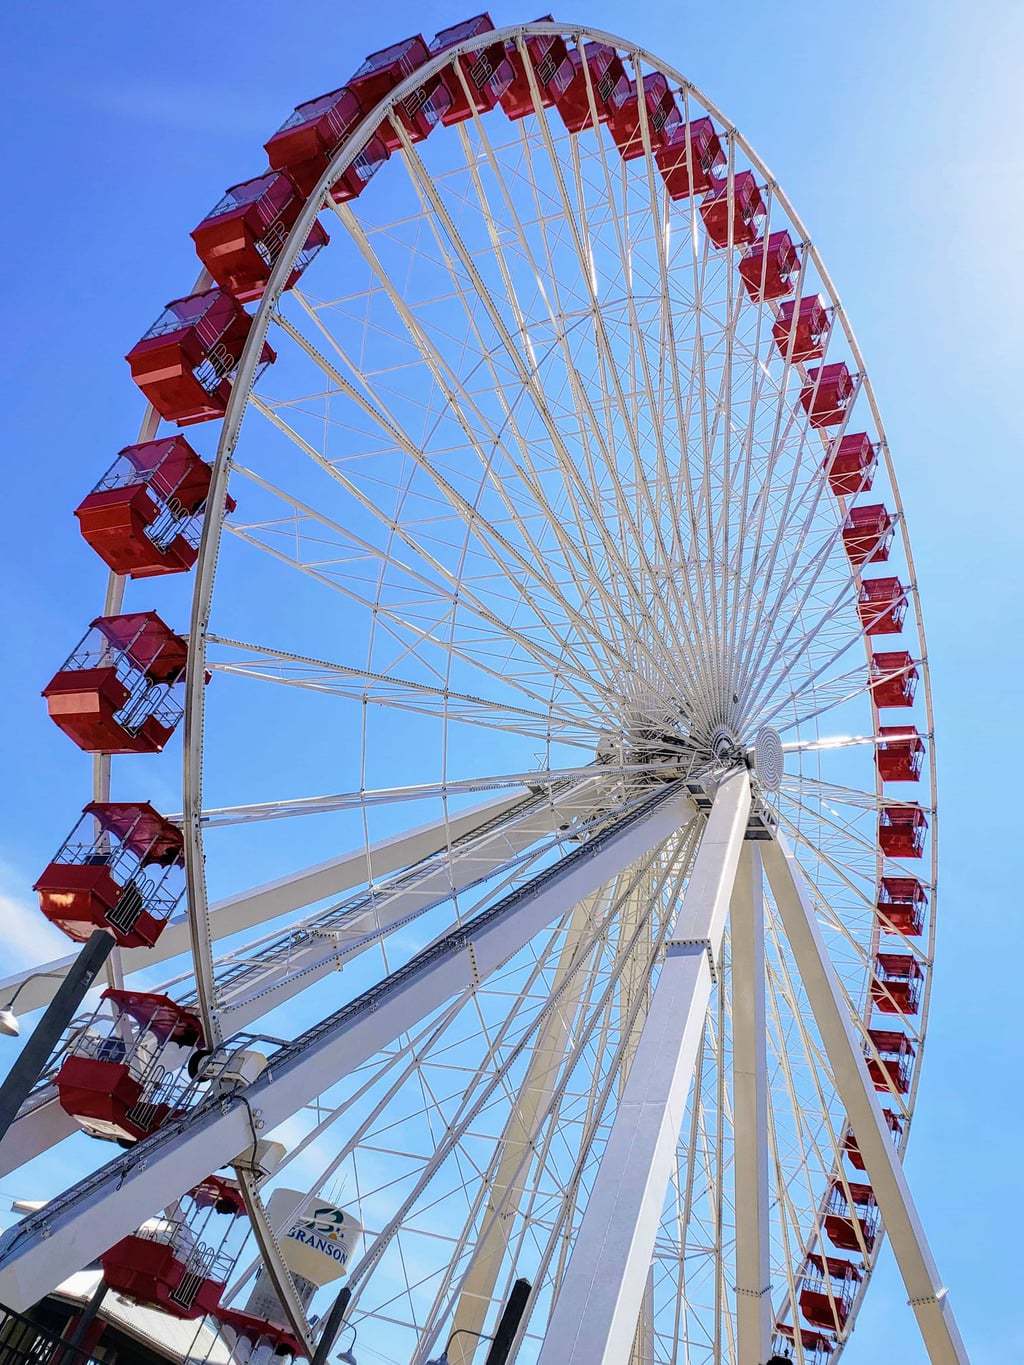 Branson Ferris wheel, Chicago navy pier Ferris wheel, Ferris wheel in Branson 